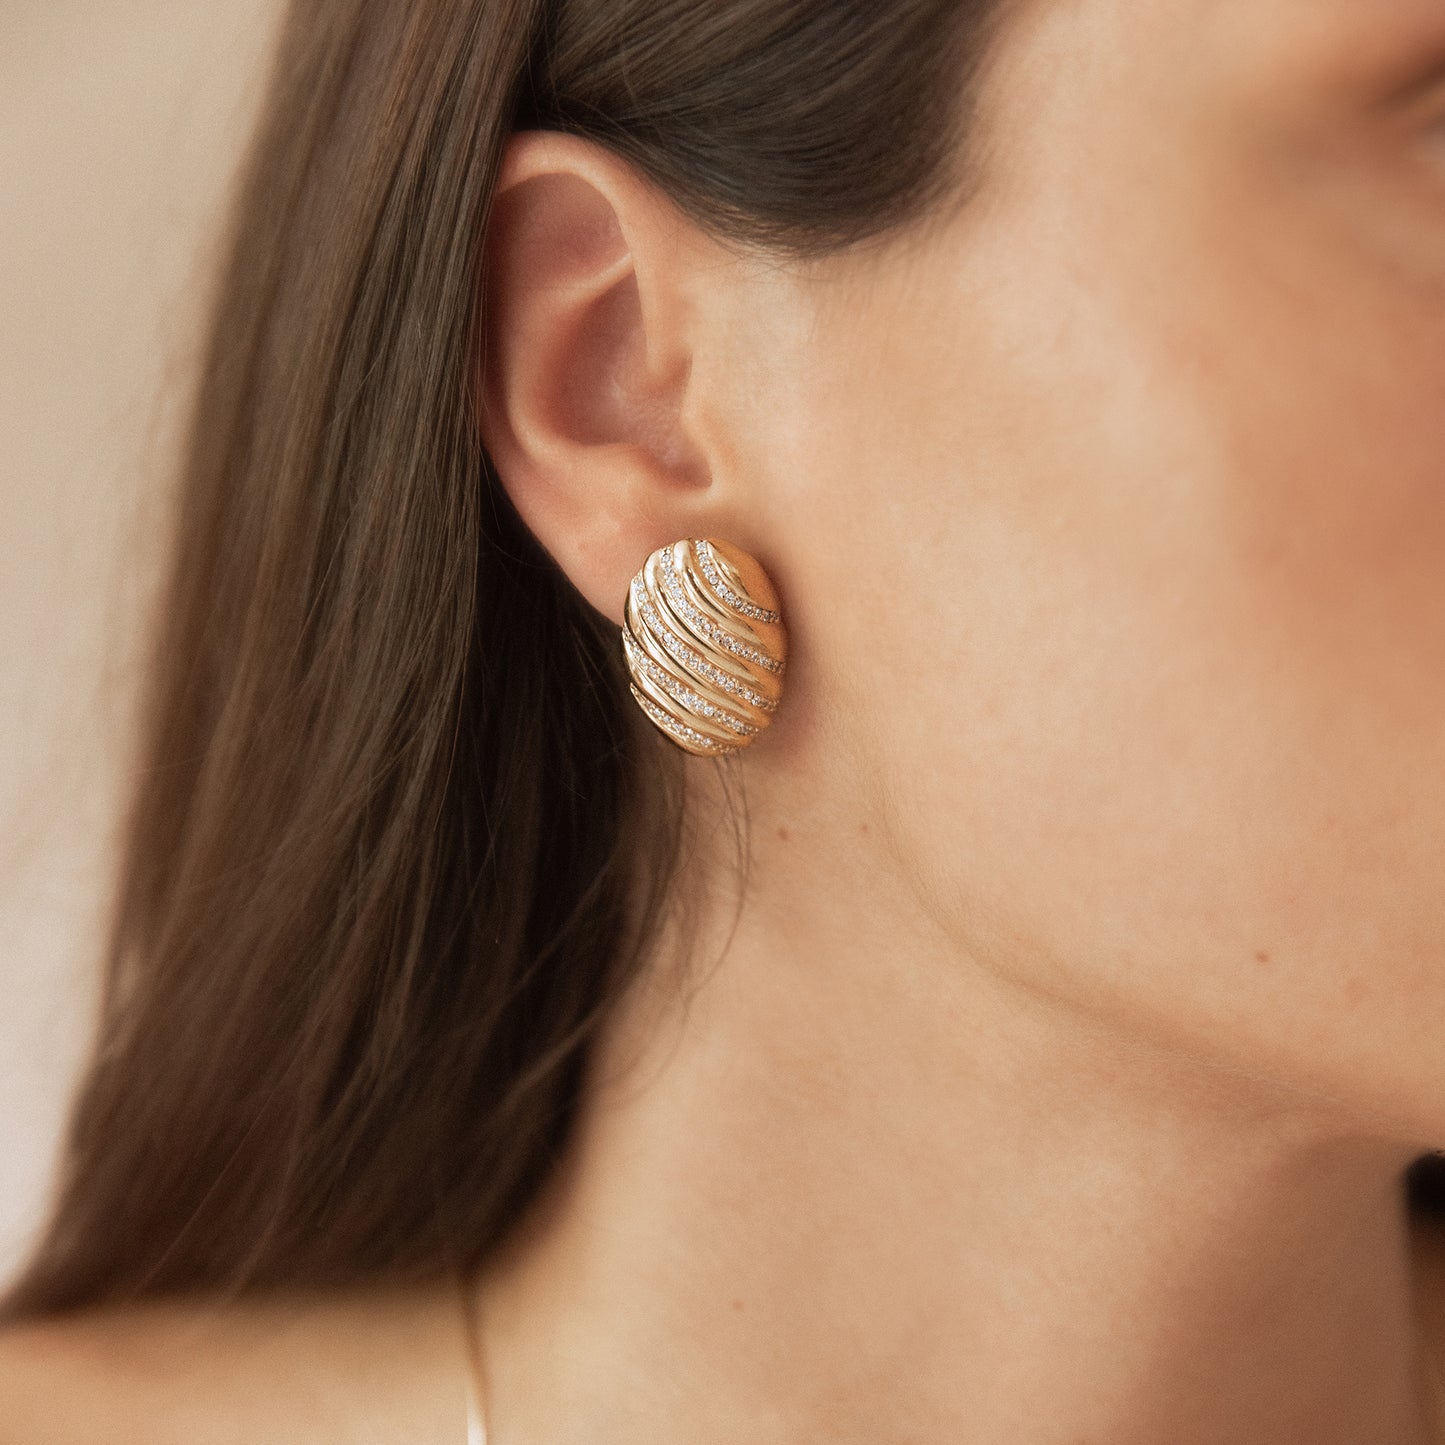 Joan earrings